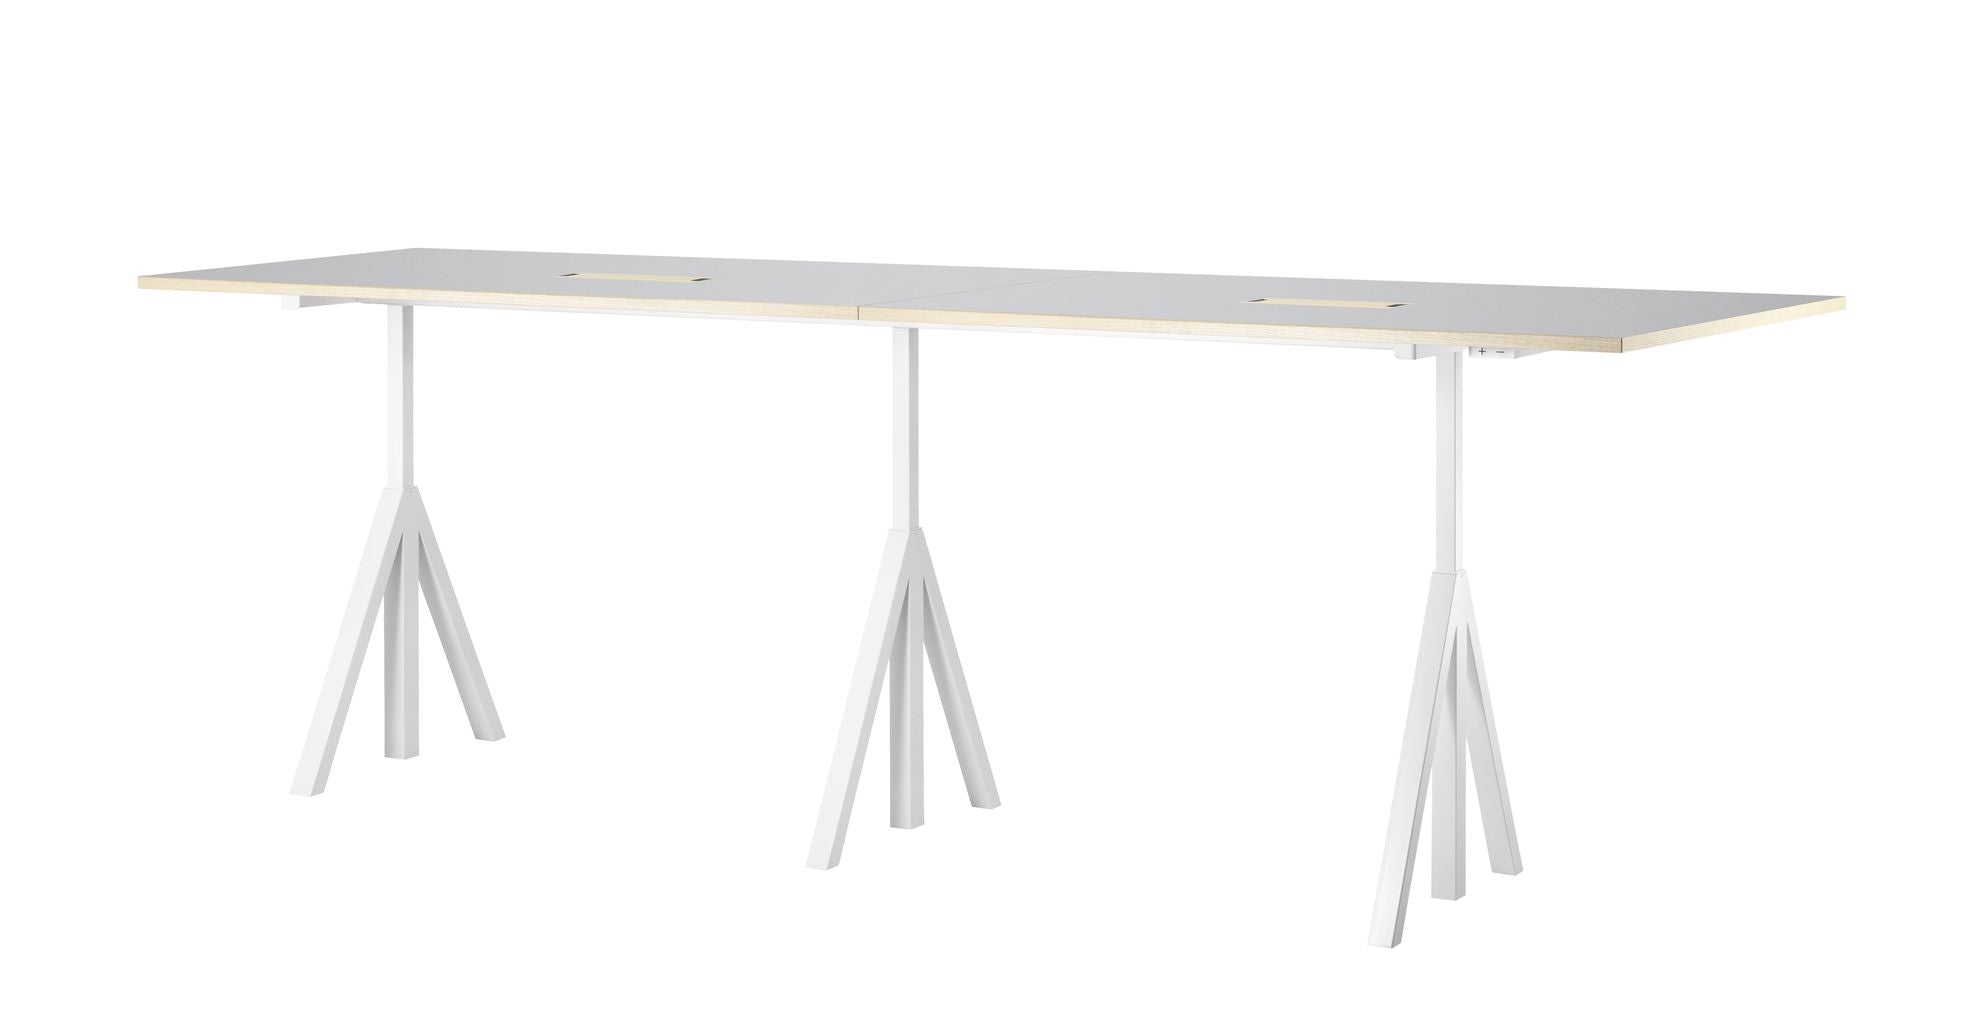 String Furniture Fungerar höjd justerbar möte tabell 90x180 cm, ljusgrå linoleum